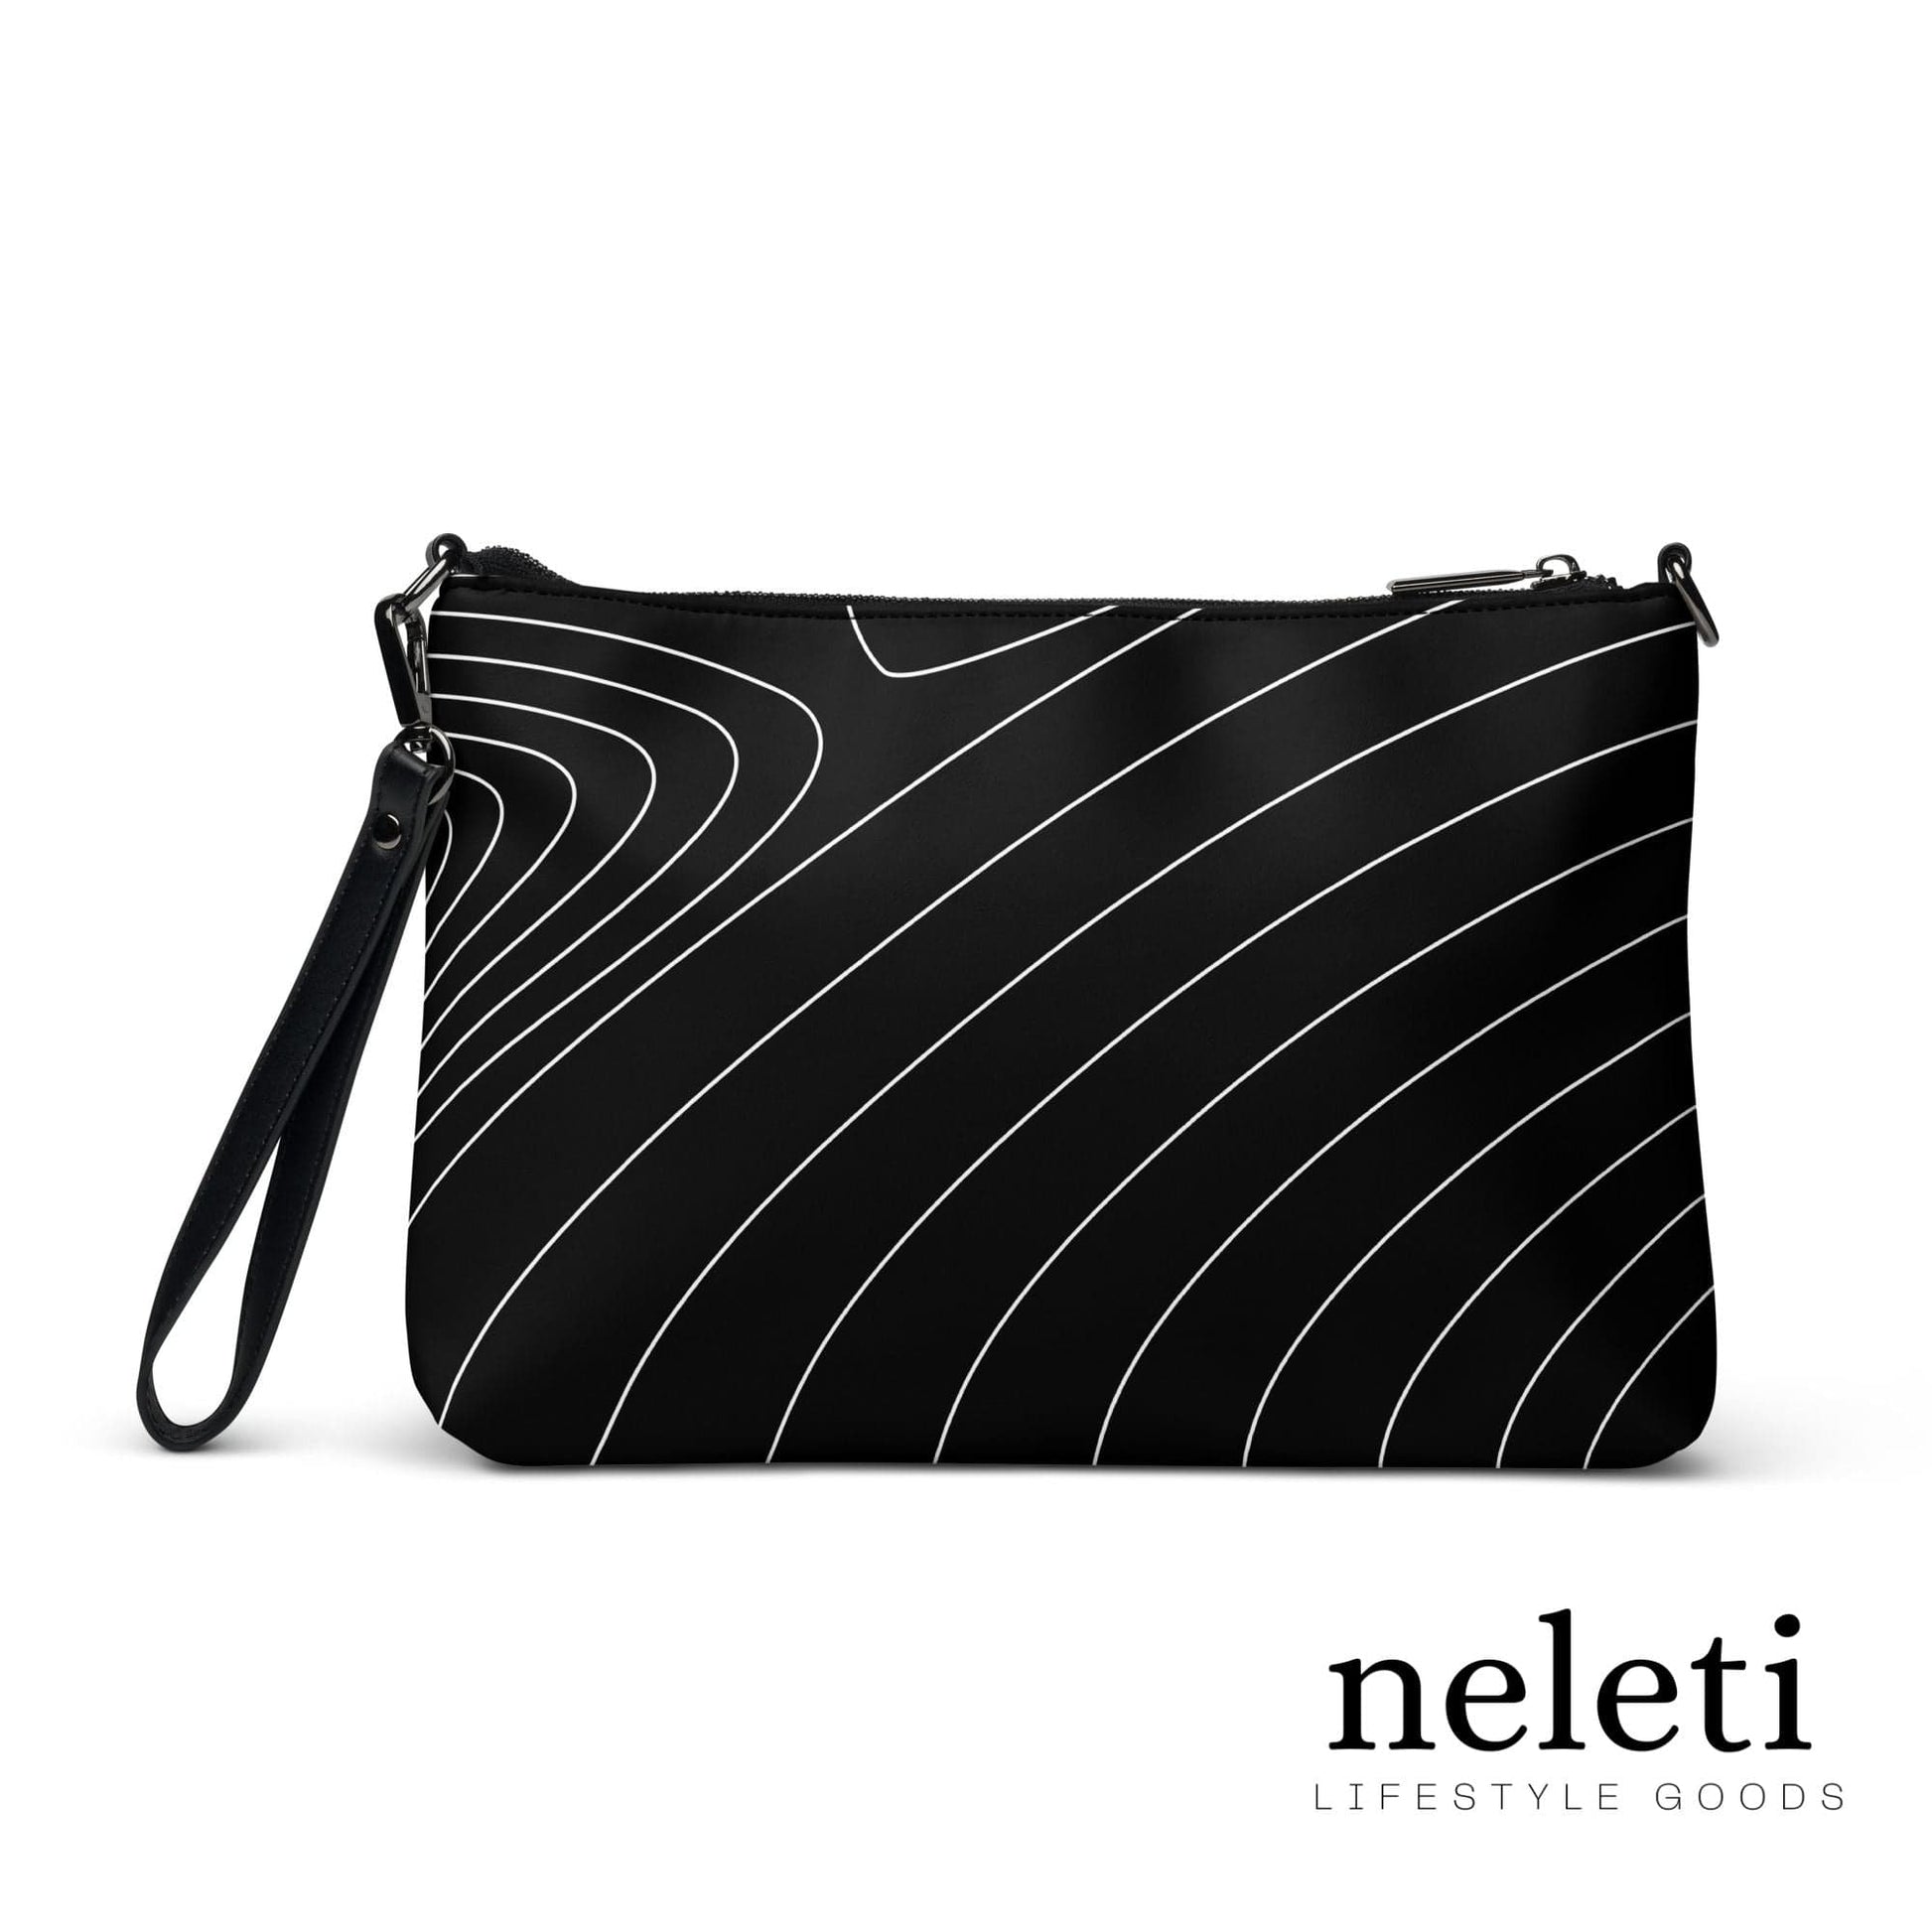 neleti.com-black-crossbody-bag-for-women